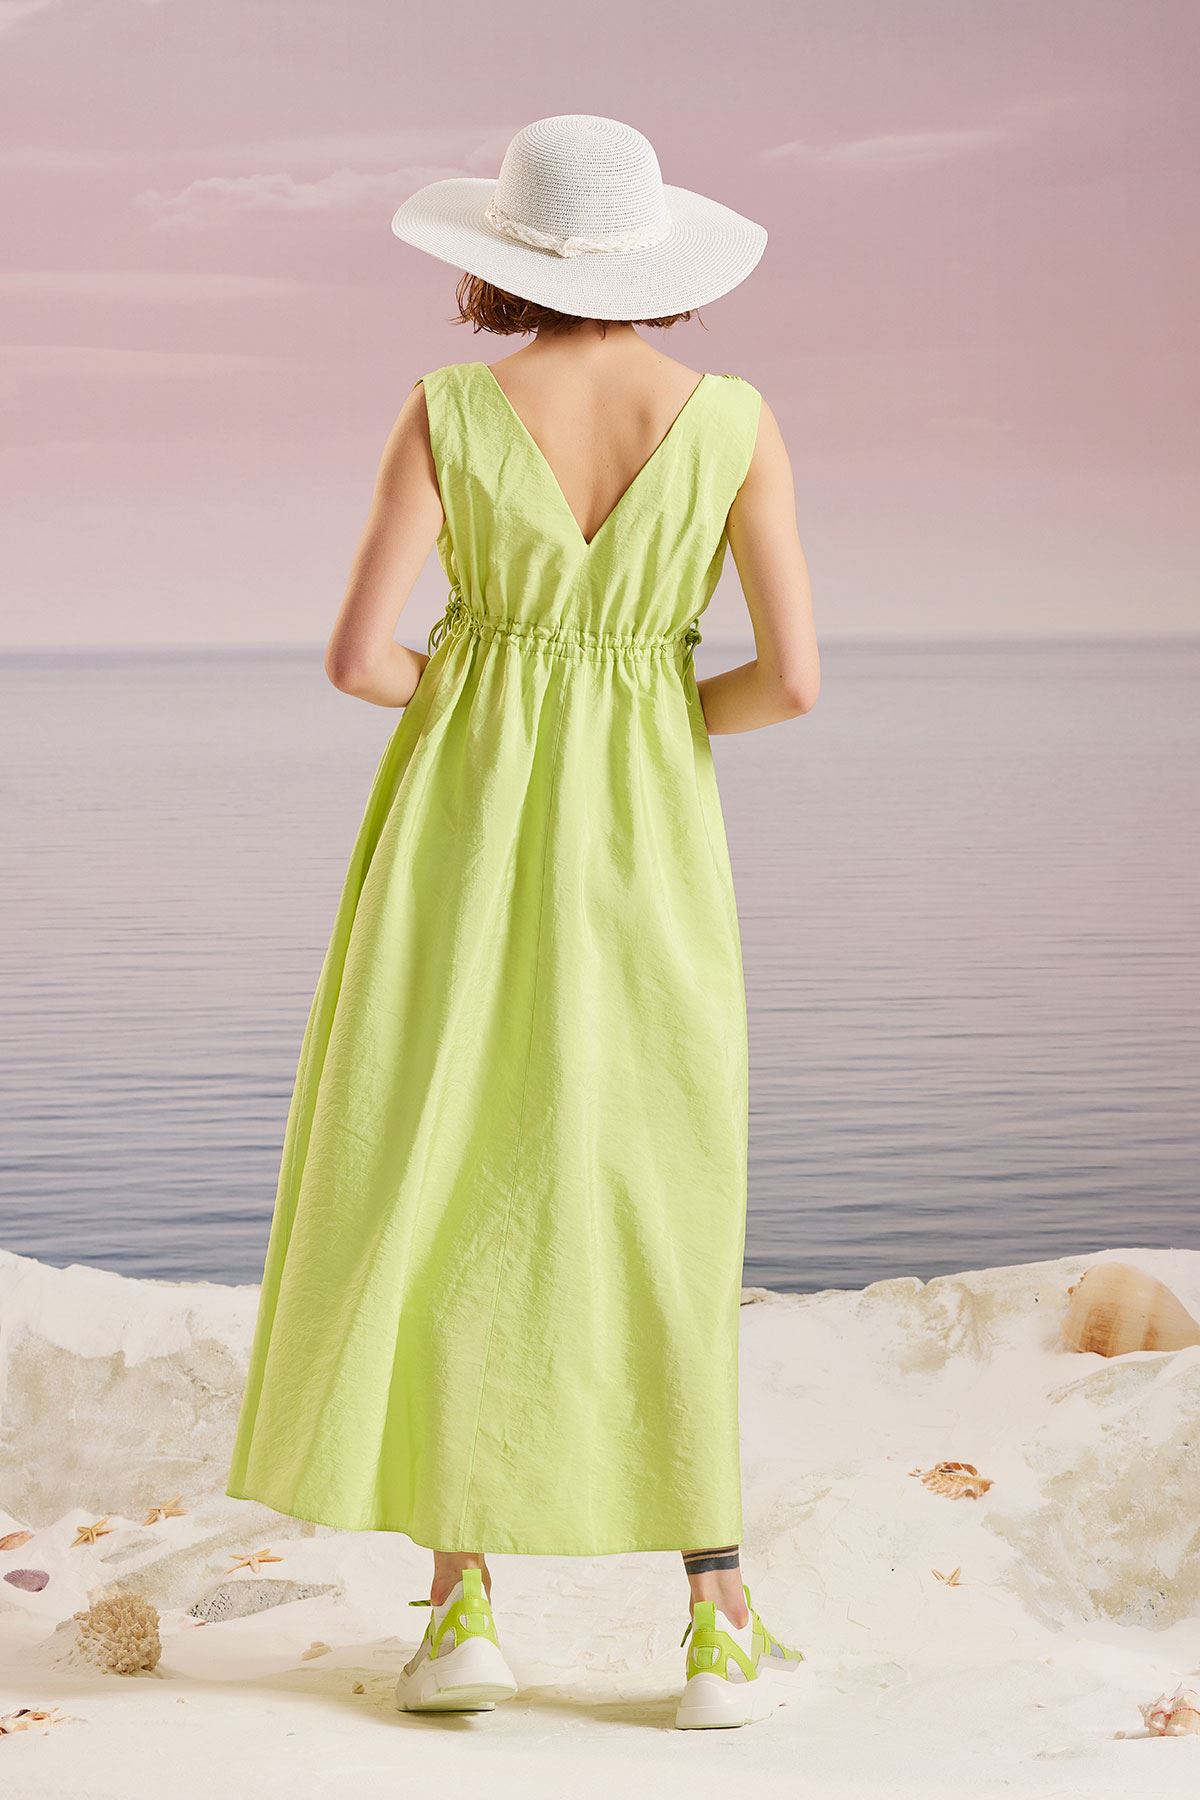 Büzgülü Maxi Elbise Fıstık Yeşili